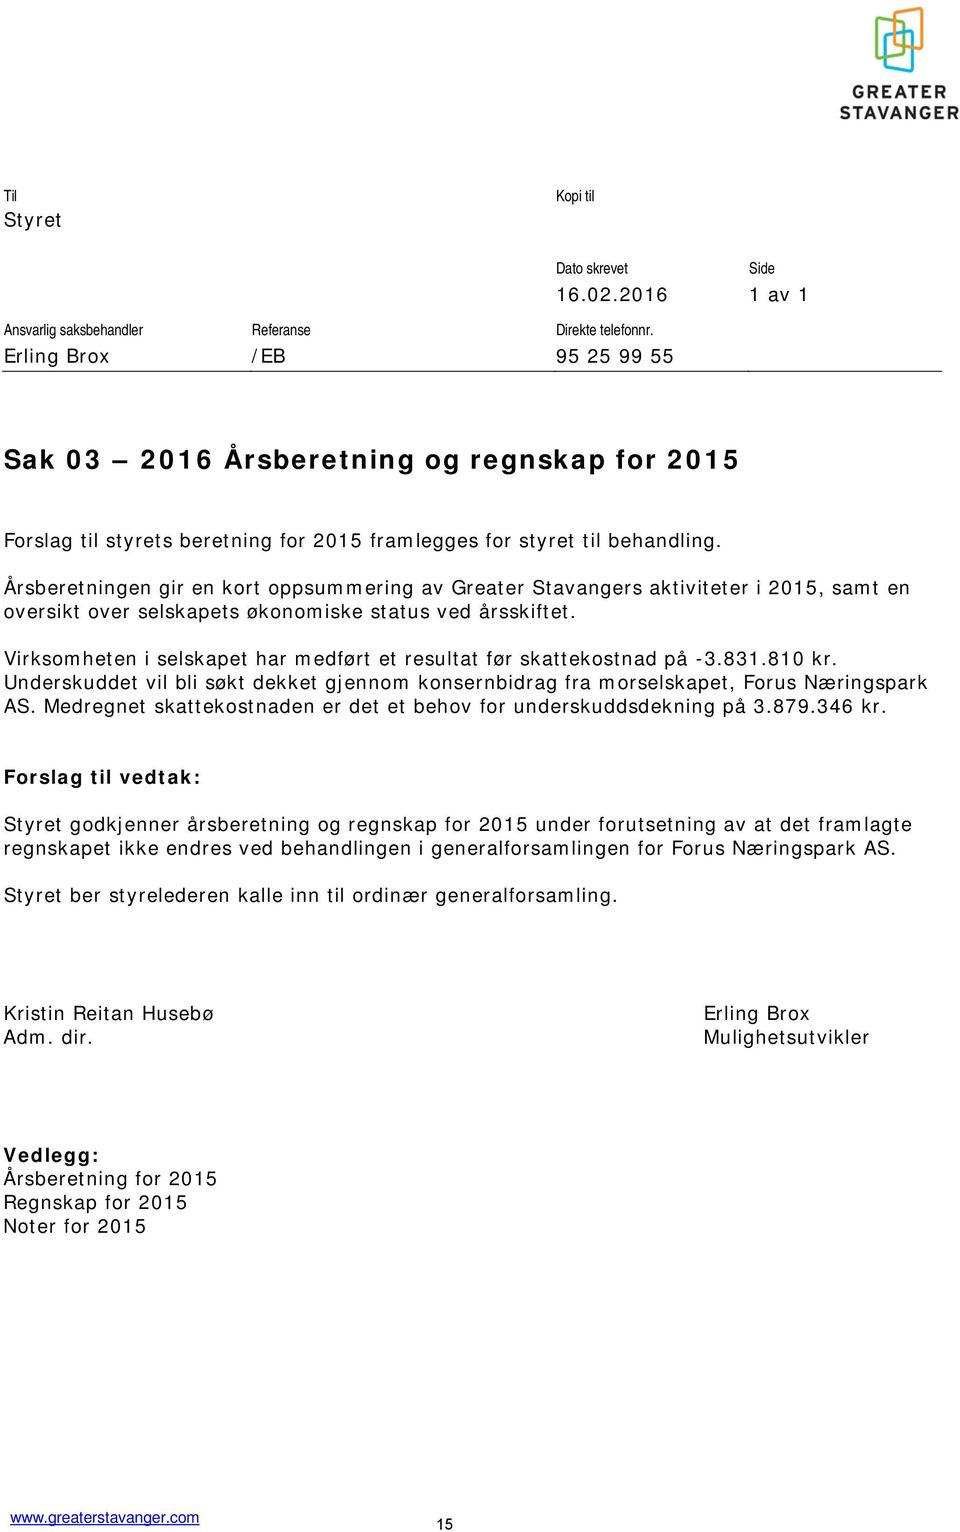 Årsberetningen gir en kort oppsummering av Greater Stavangers aktiviteter i 2015, samt en oversikt over selskapets økonomiske status ved årsskiftet.